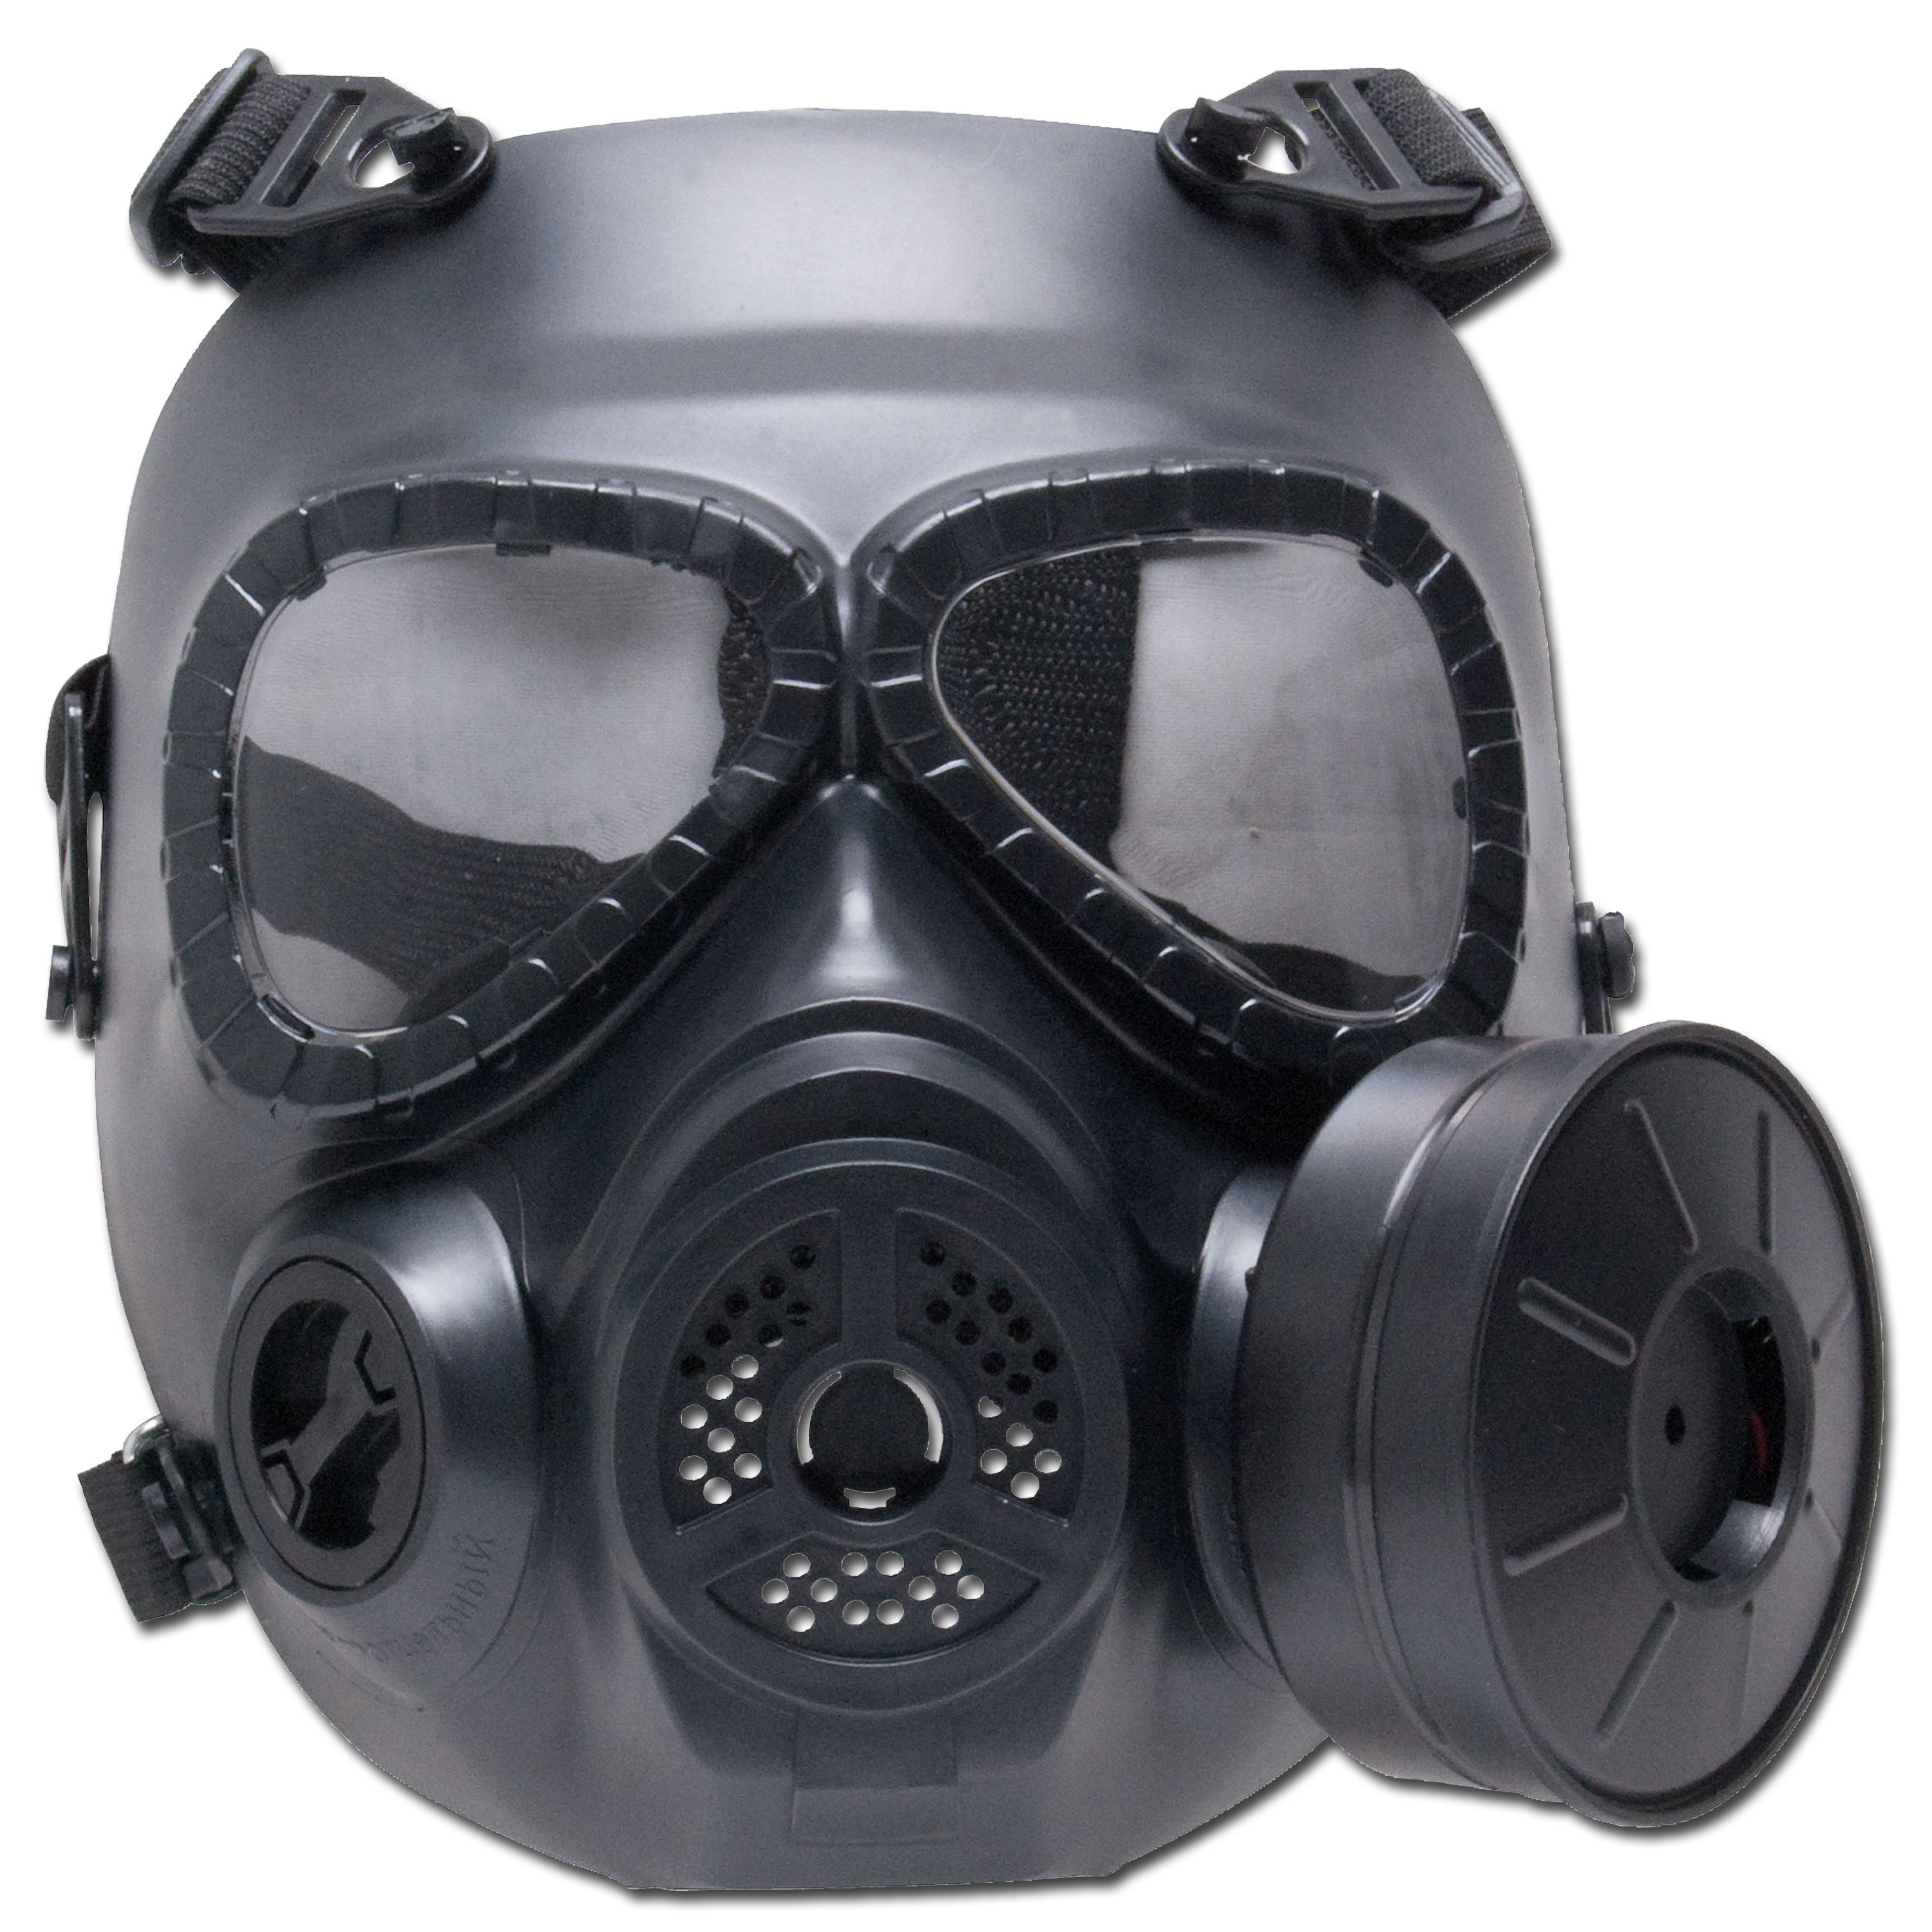 Masque à gaz de décoration GSG M04 noir, Masque à gaz de décoration GSG  M04 noir, Masques de protection, Airsoft